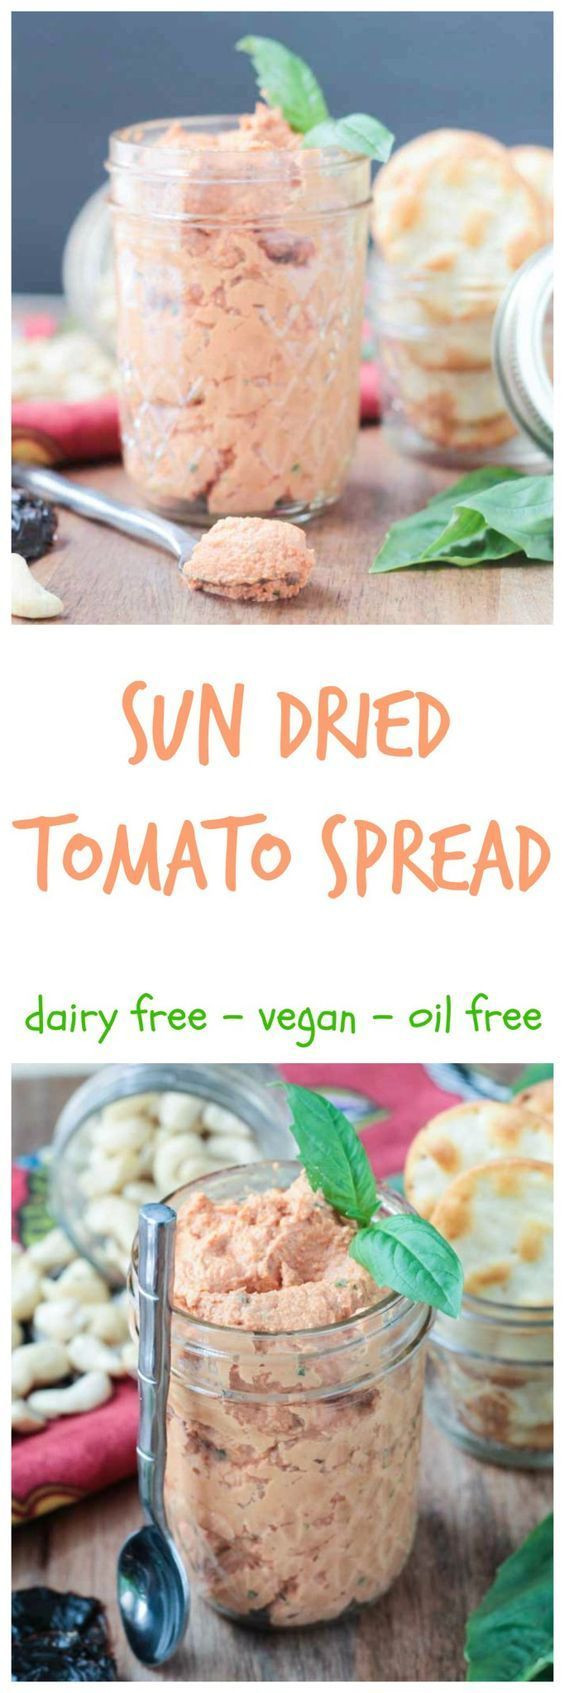 Is Ezekiel Bread Vegan
 25 best ideas about Tomato sandwich on Pinterest